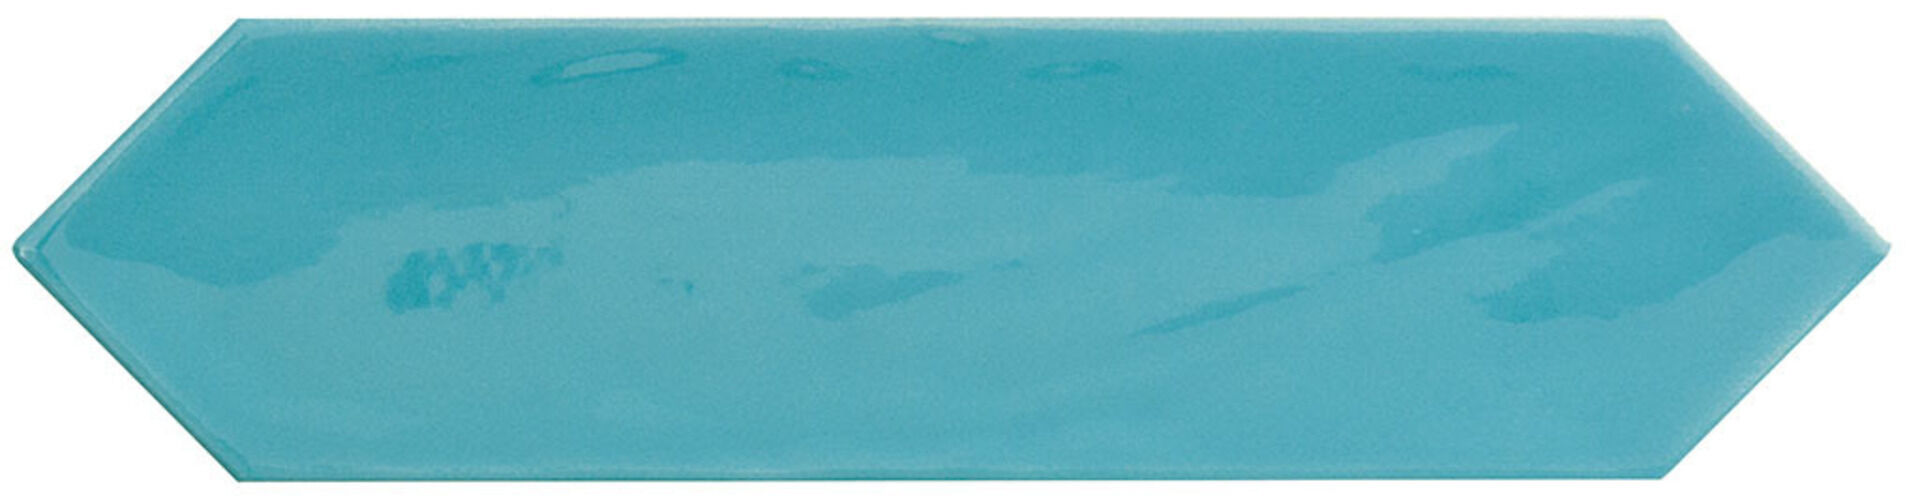 Керамическая плитка KANE PICKET SKY 7,5*30 / коллекция KANE / производитель CIFRE CERAMICA / страна Испания